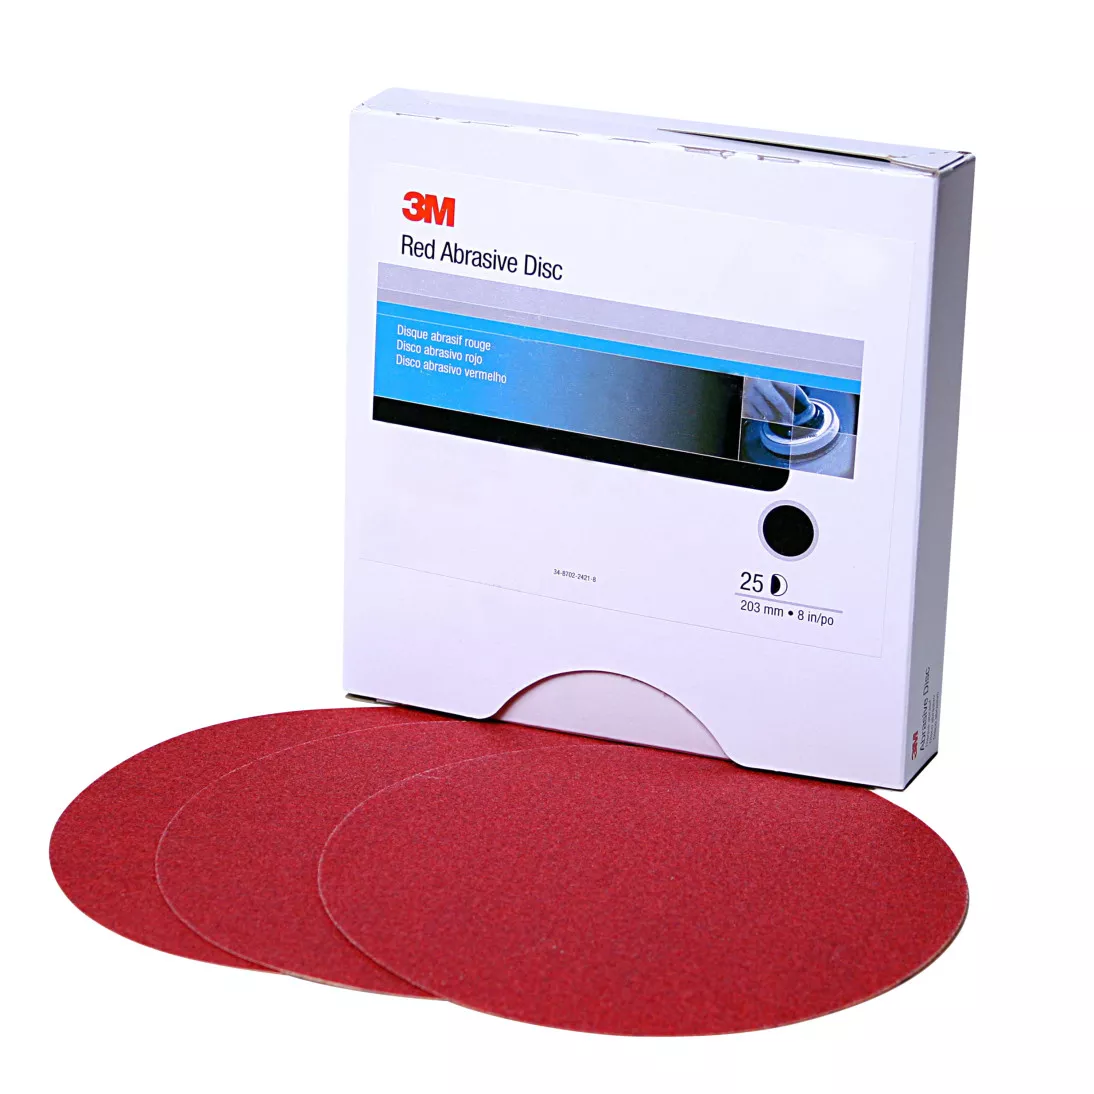 3M™ Red Abrasive Stikit™ Disc, 01106, 6 in, P600 grade, 100 discs per
roll, 6 rolls per case